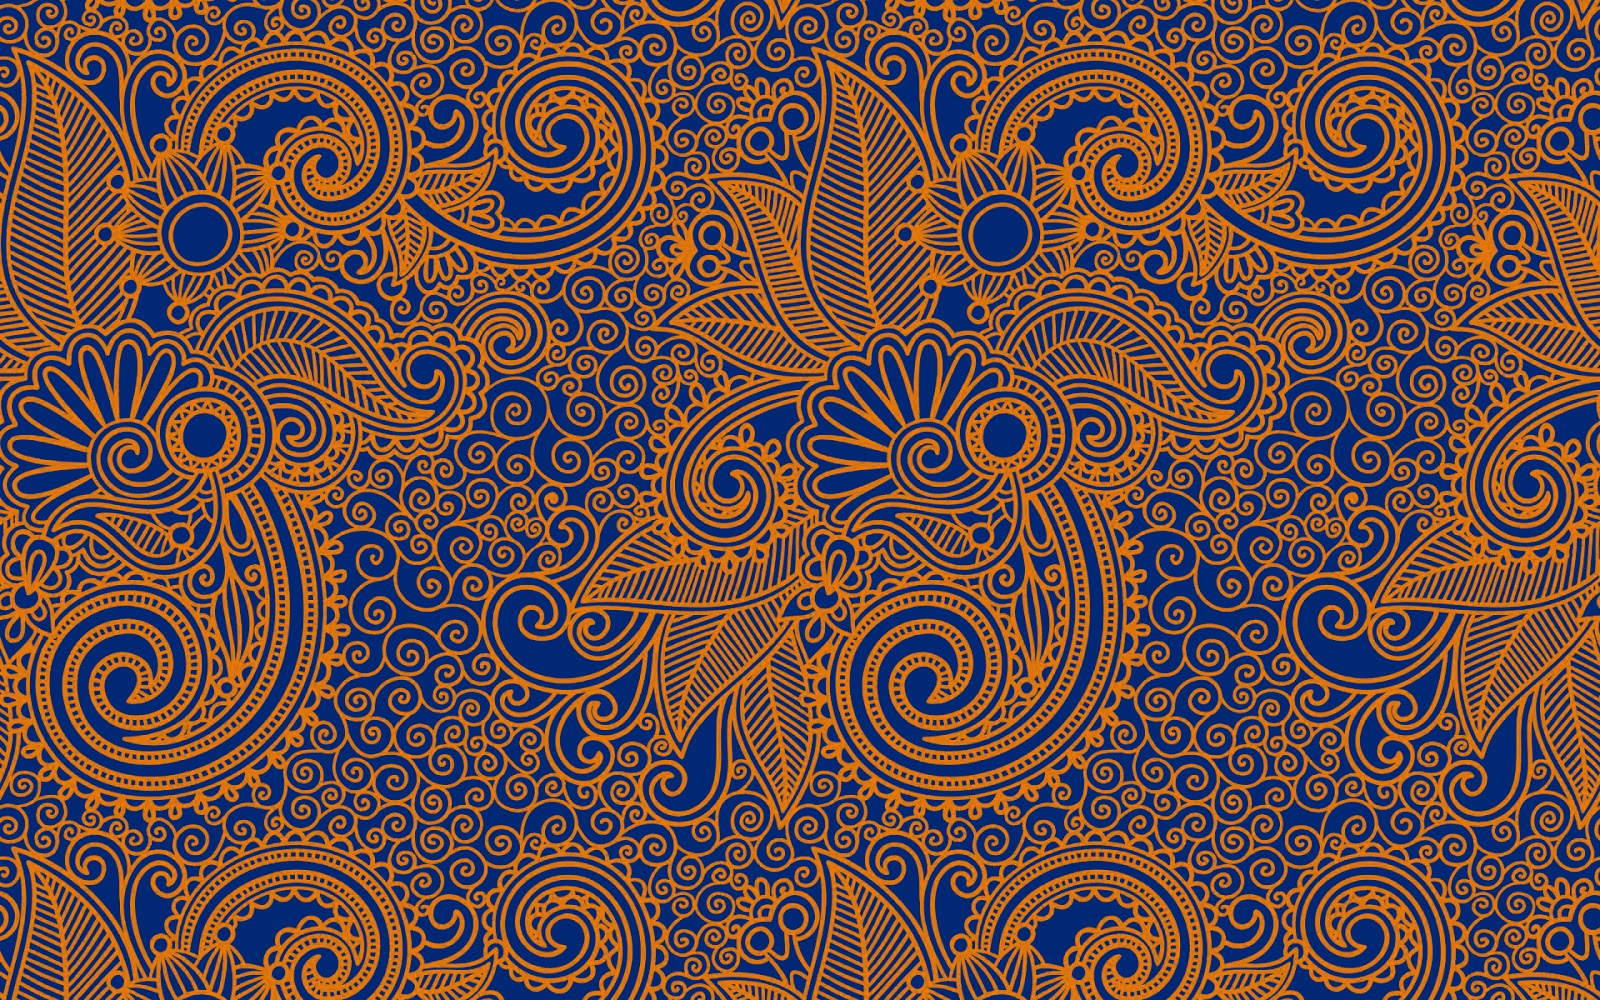 Gambar sketsa batik keren - 28 images - gambar motif batik 